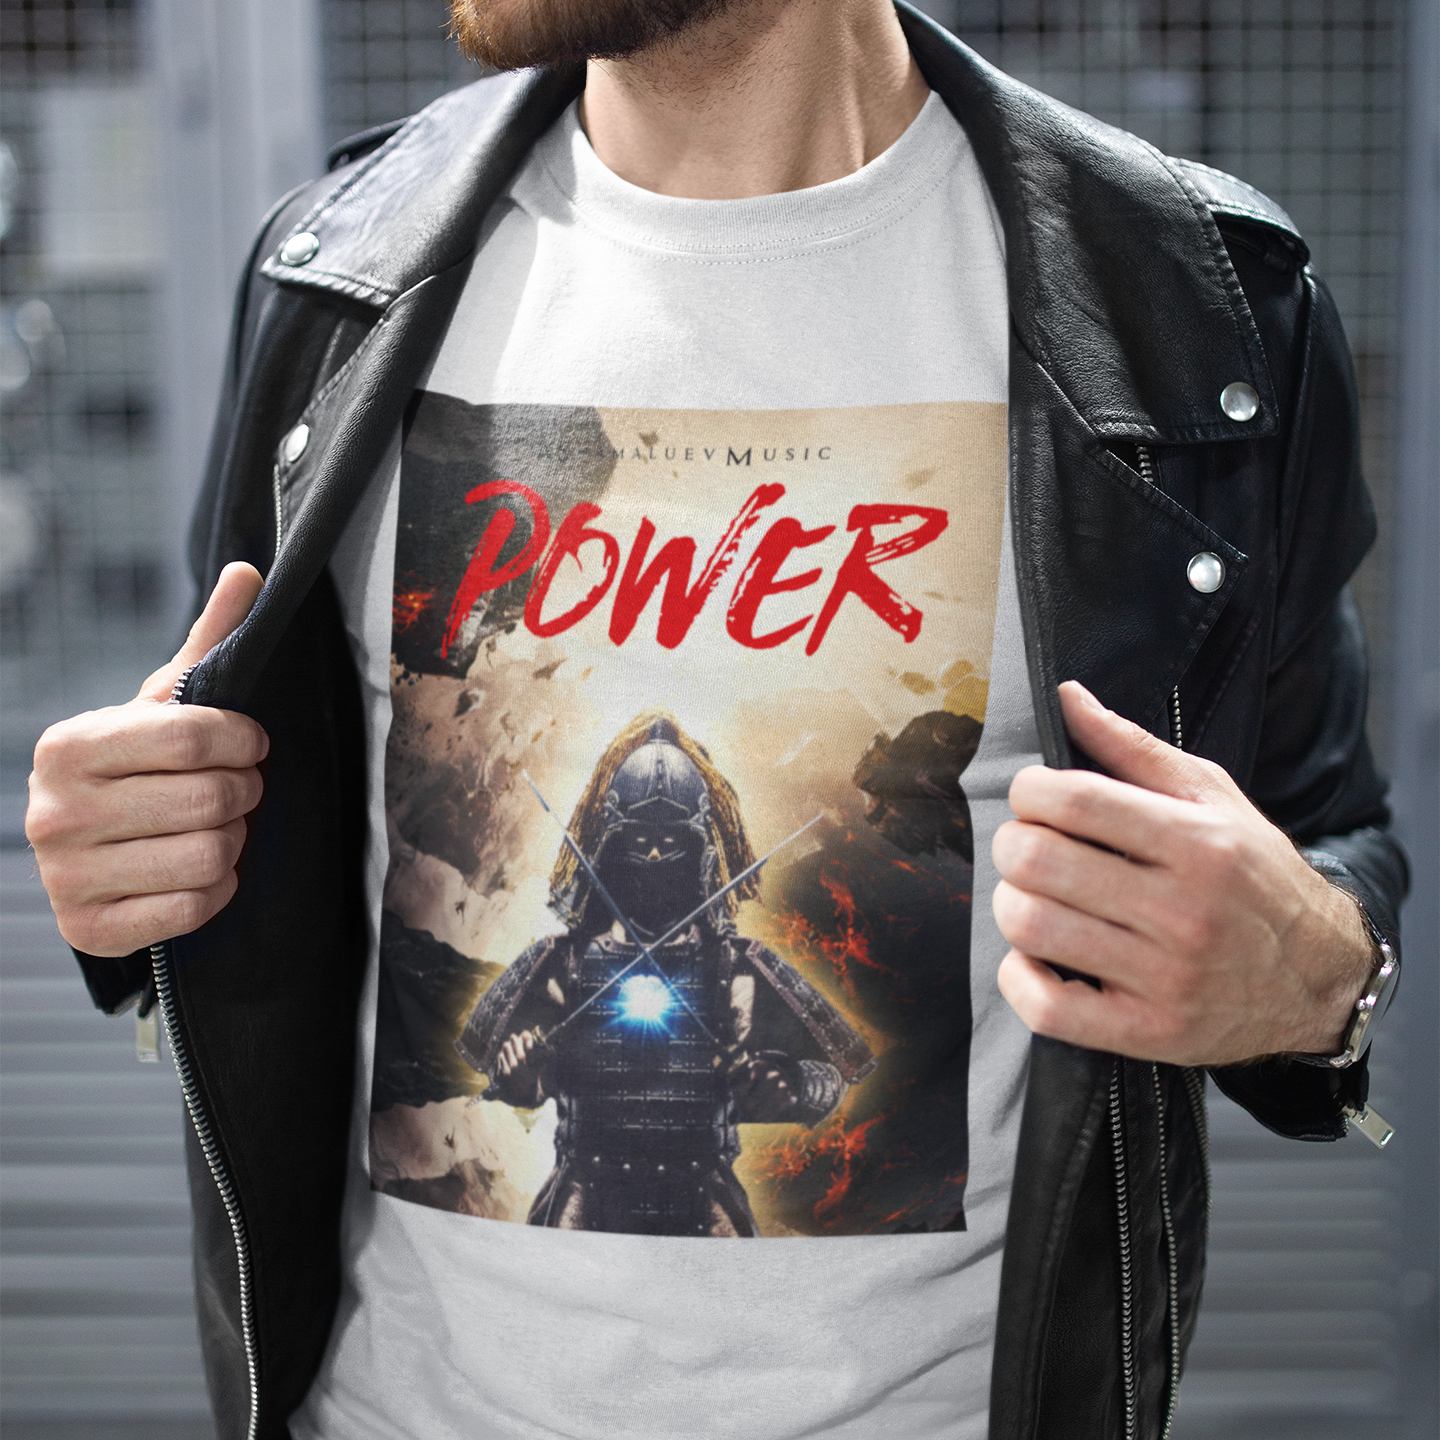 T-shirt "Power"